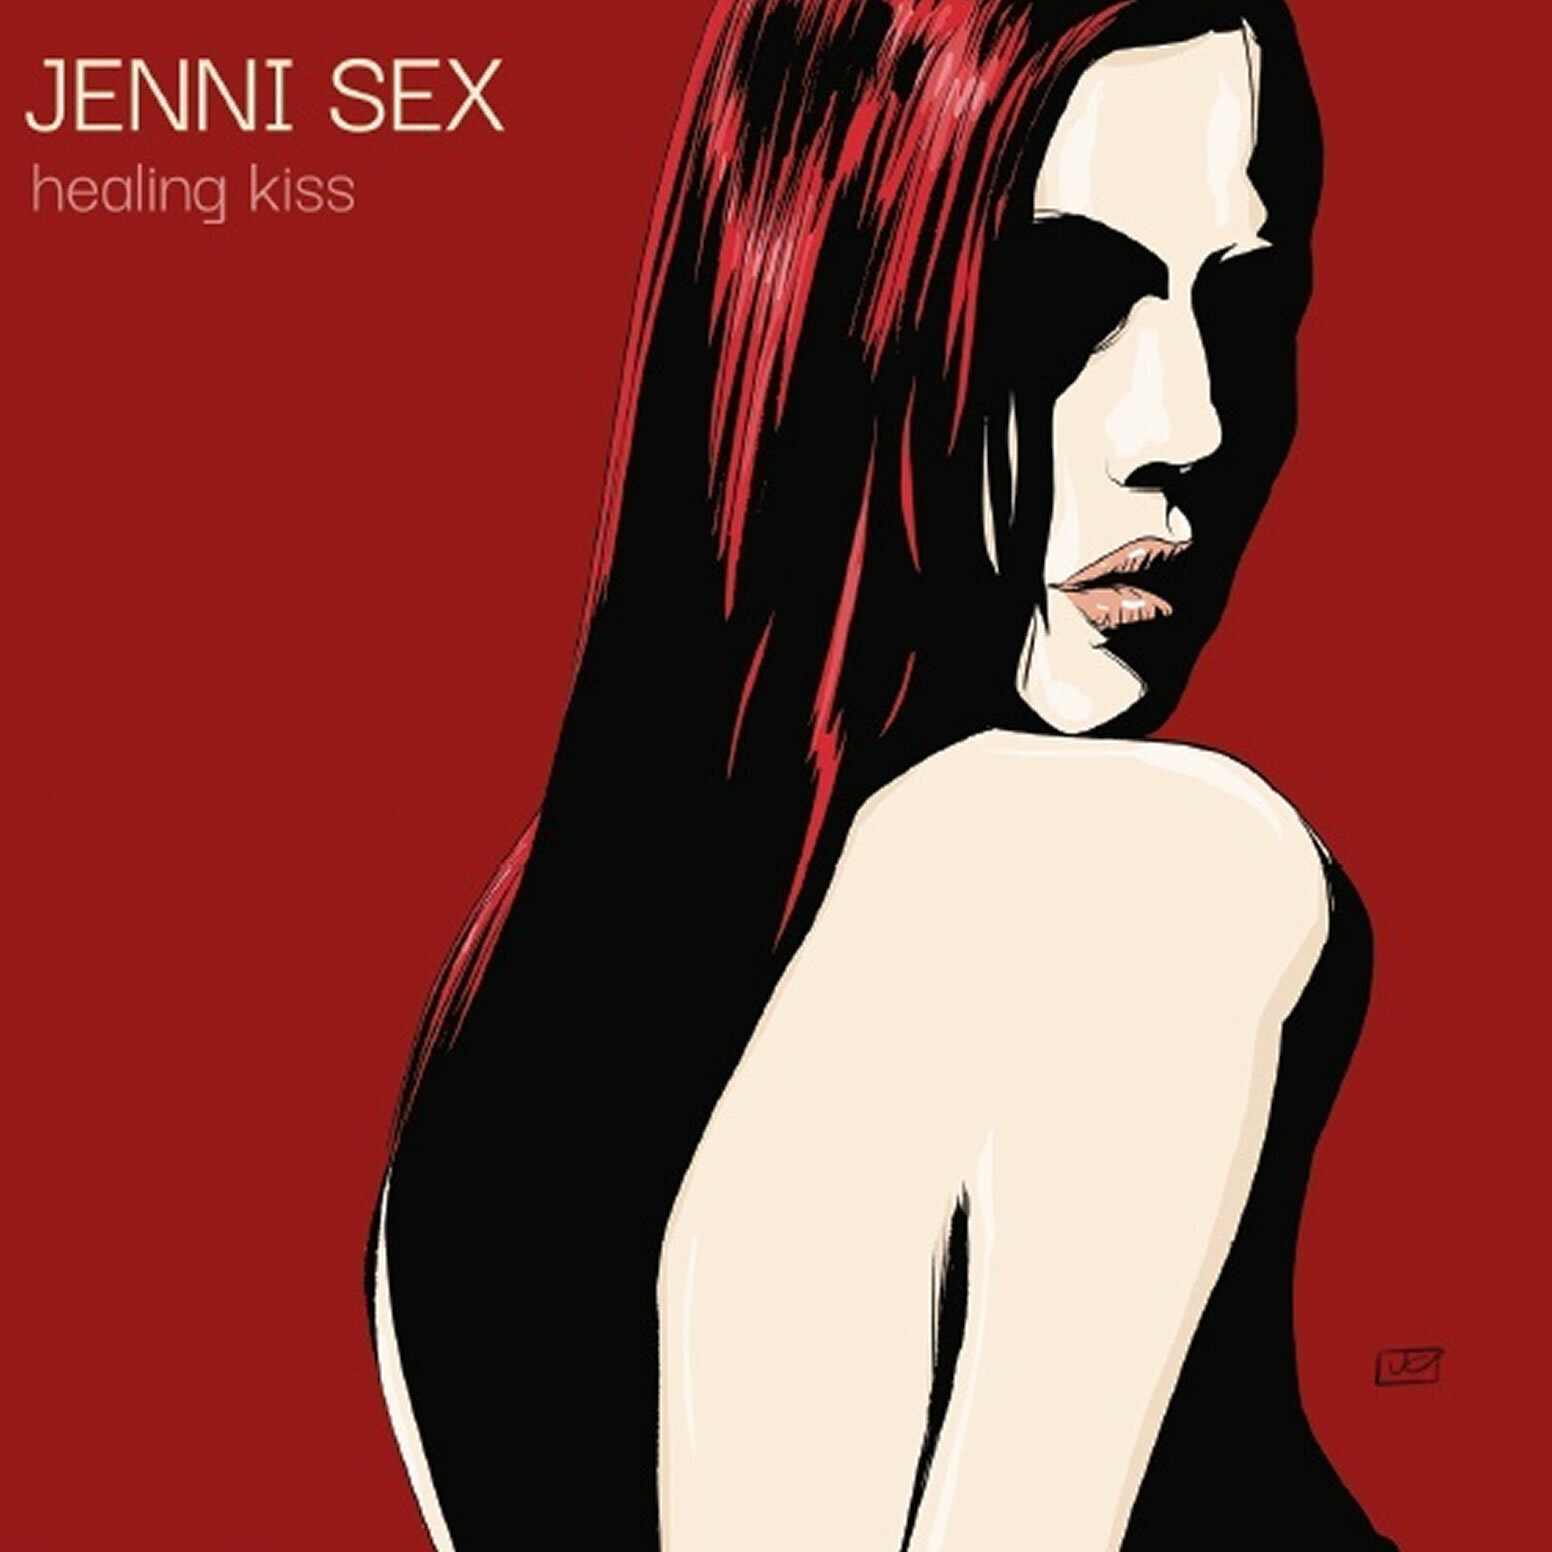 JENNI_SEX_COVER_1500_X_1500